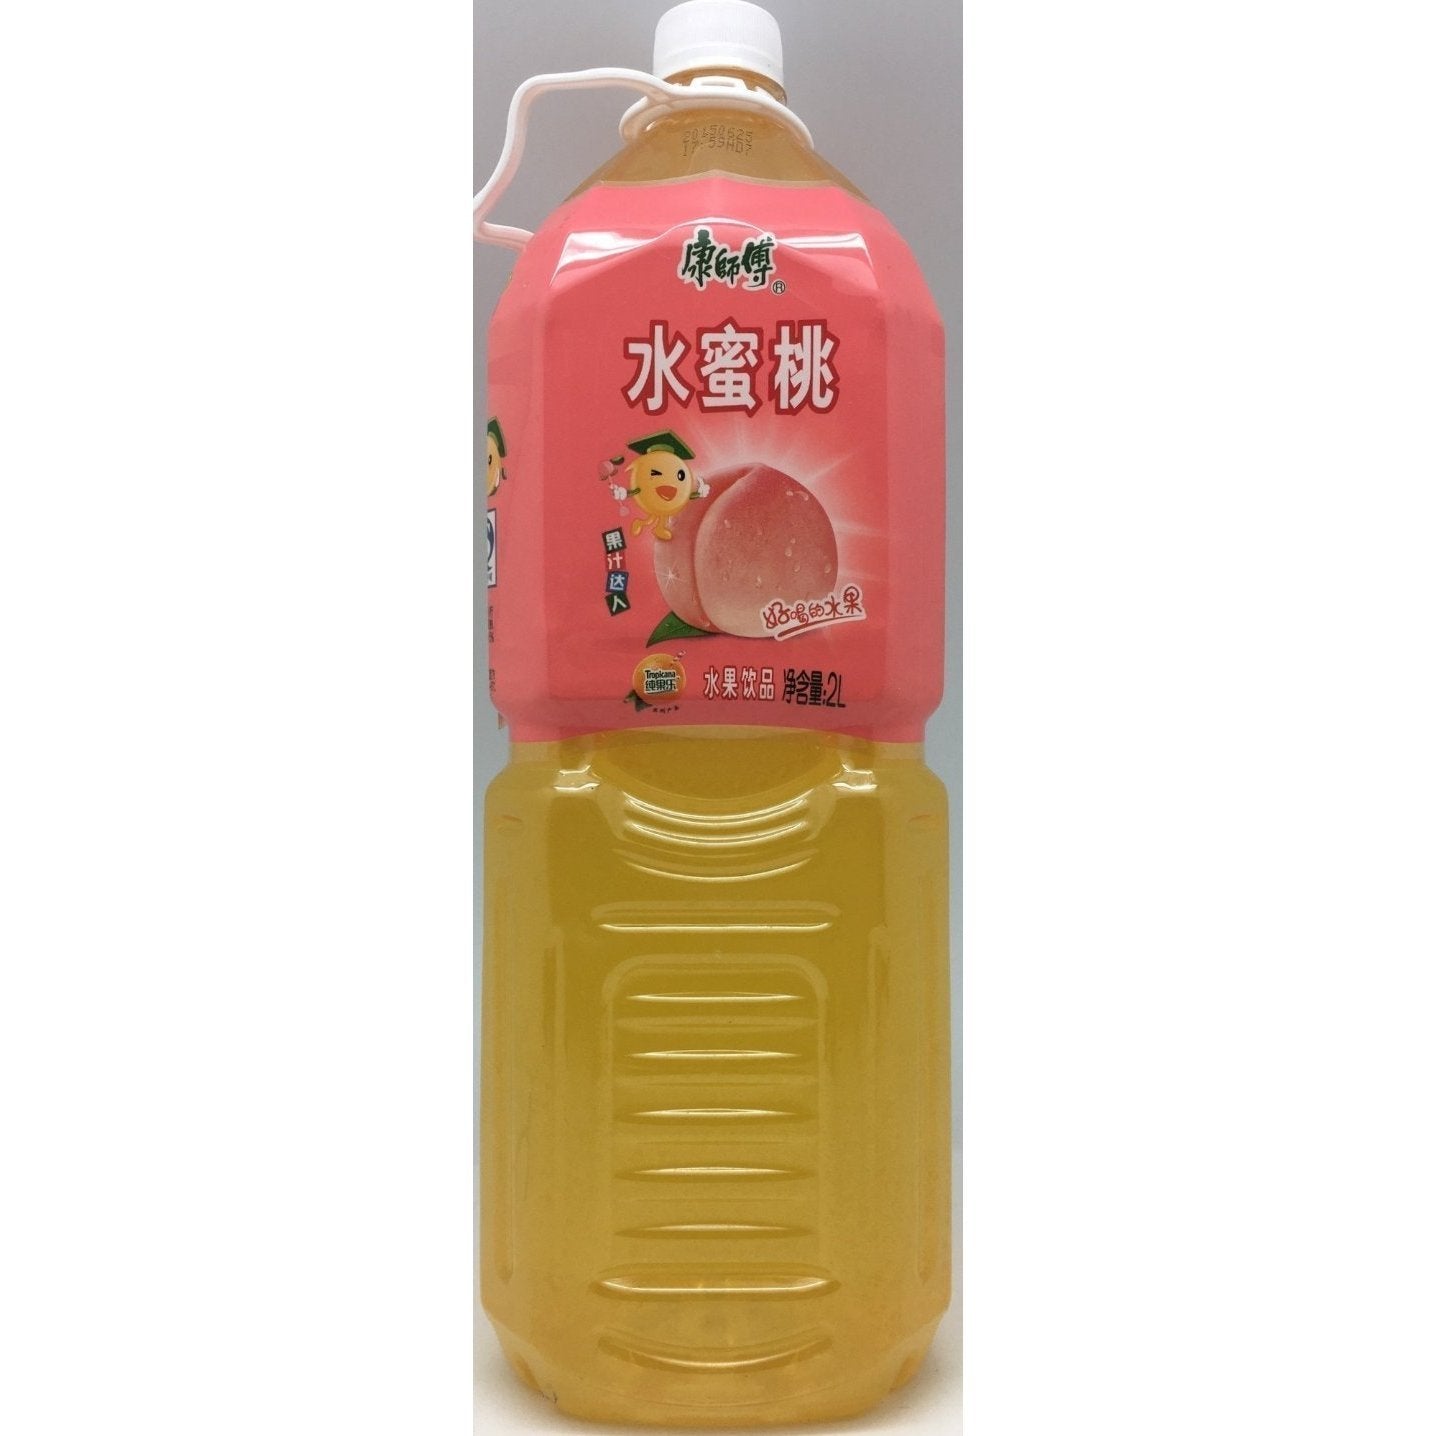 B005PX Kon Brand - Peach Flavour Drink 2L - 6 bot /1ctn - New Eastland Pty Ltd - Asian food wholesalers